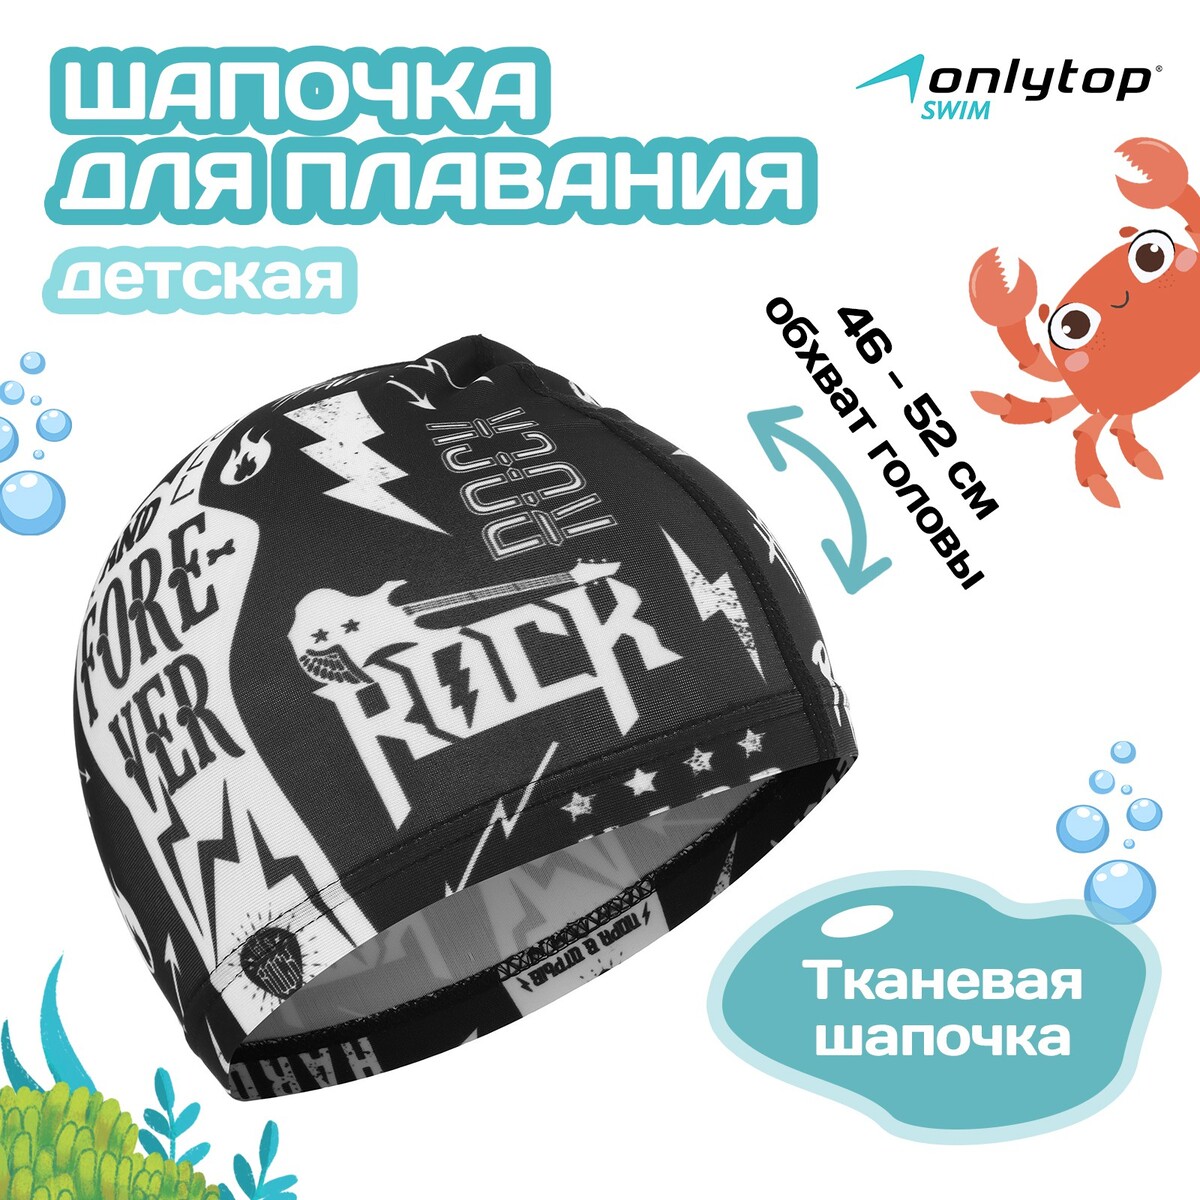 Шапочка для плавания детская rock and roll, тканевая, обхват 46-52 см шапочка для плавания atemi сс103 тканевая с силиконовым покрытием синяя